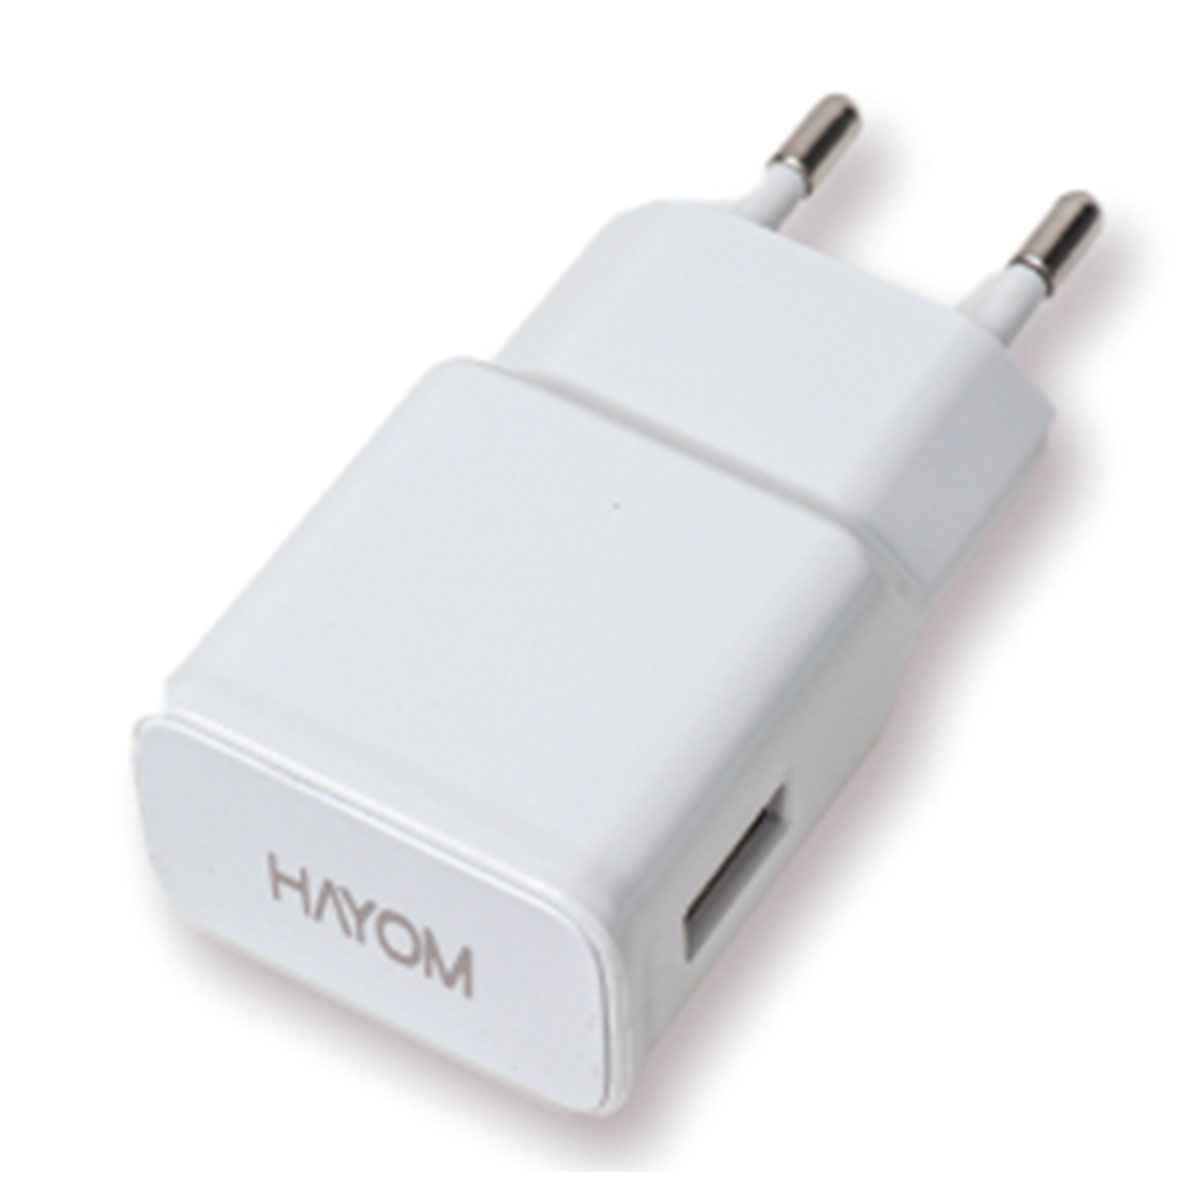 Carregador de Parede USB - Hayom CR1201 - USB de 2.1A - Branco - 121001